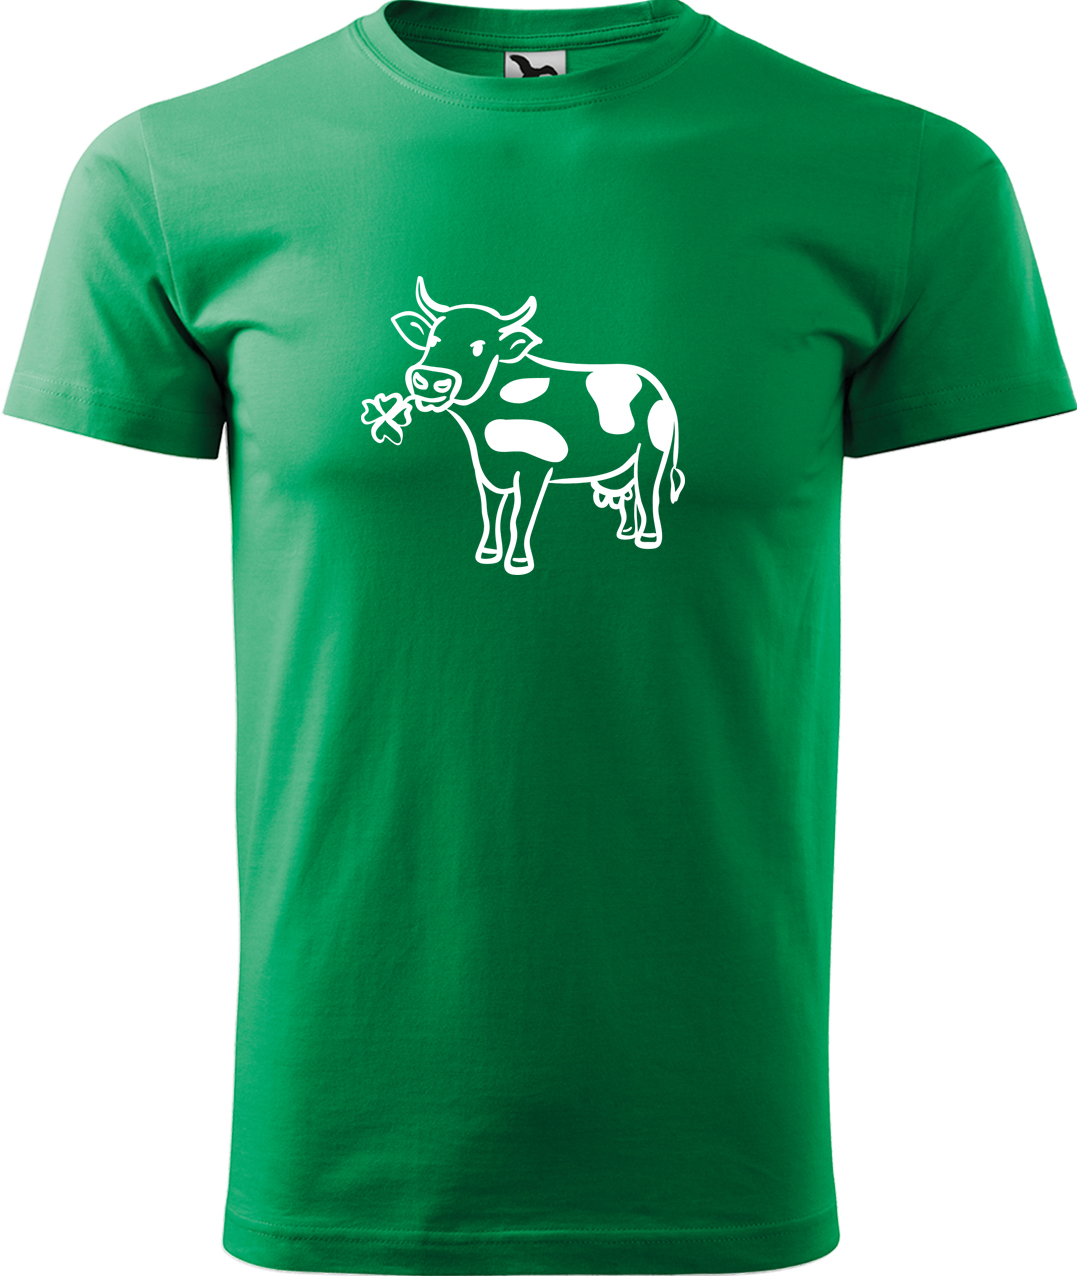 Pánské tričko s krávou - Kravička a jetel Velikost: XL, Barva: Středně zelená (16), Střih: pánský